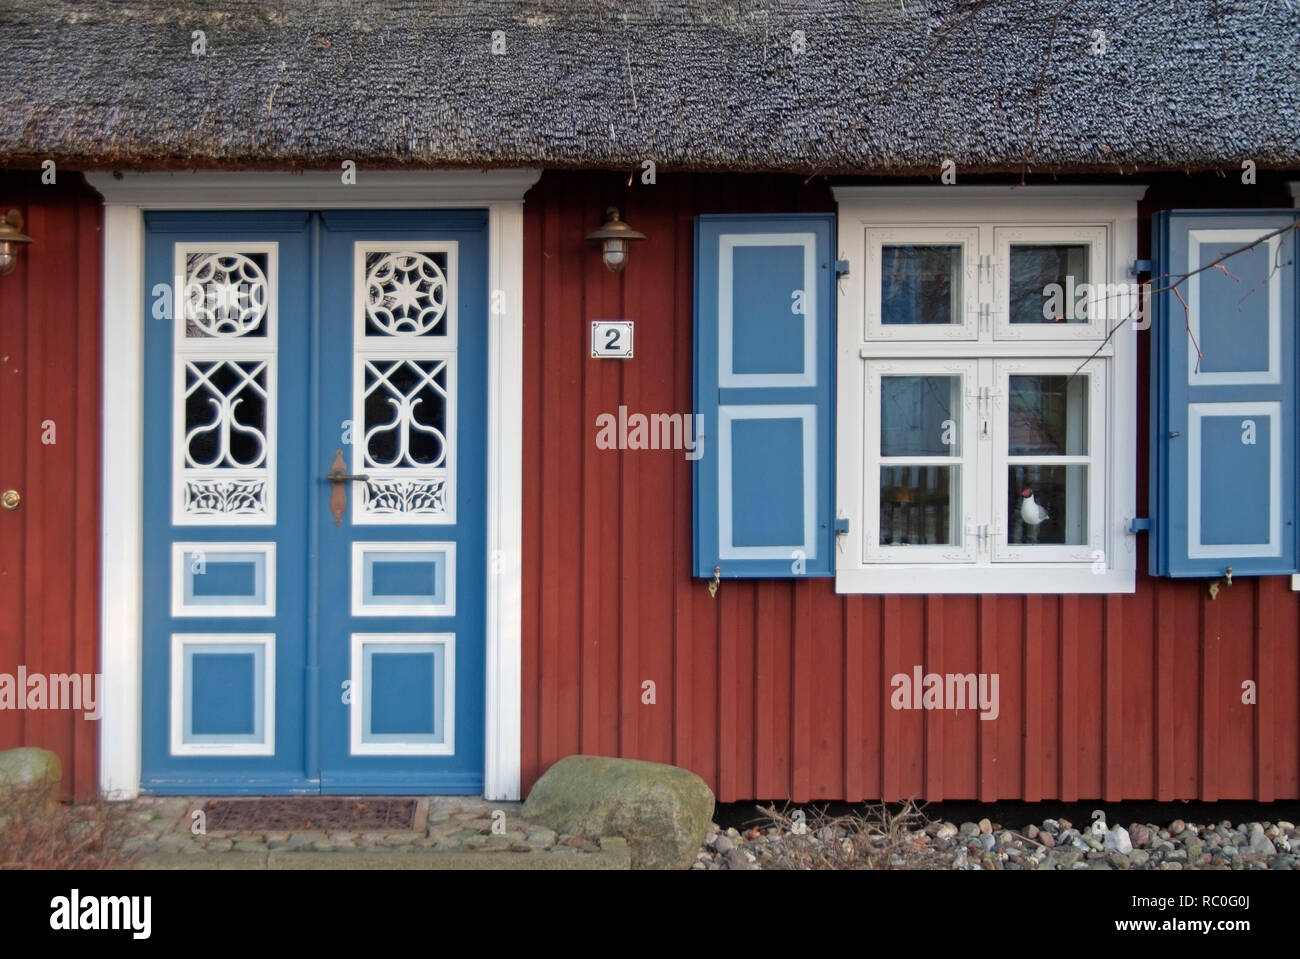 Tür und Fenster im Alten Kapitänshaus, Born, Darß, Fischland-Darß-Zingst, Mecklenburg-Vorpommern, Deutschland, Europa | Tür und Fenster in einem alten Ca Stockfoto